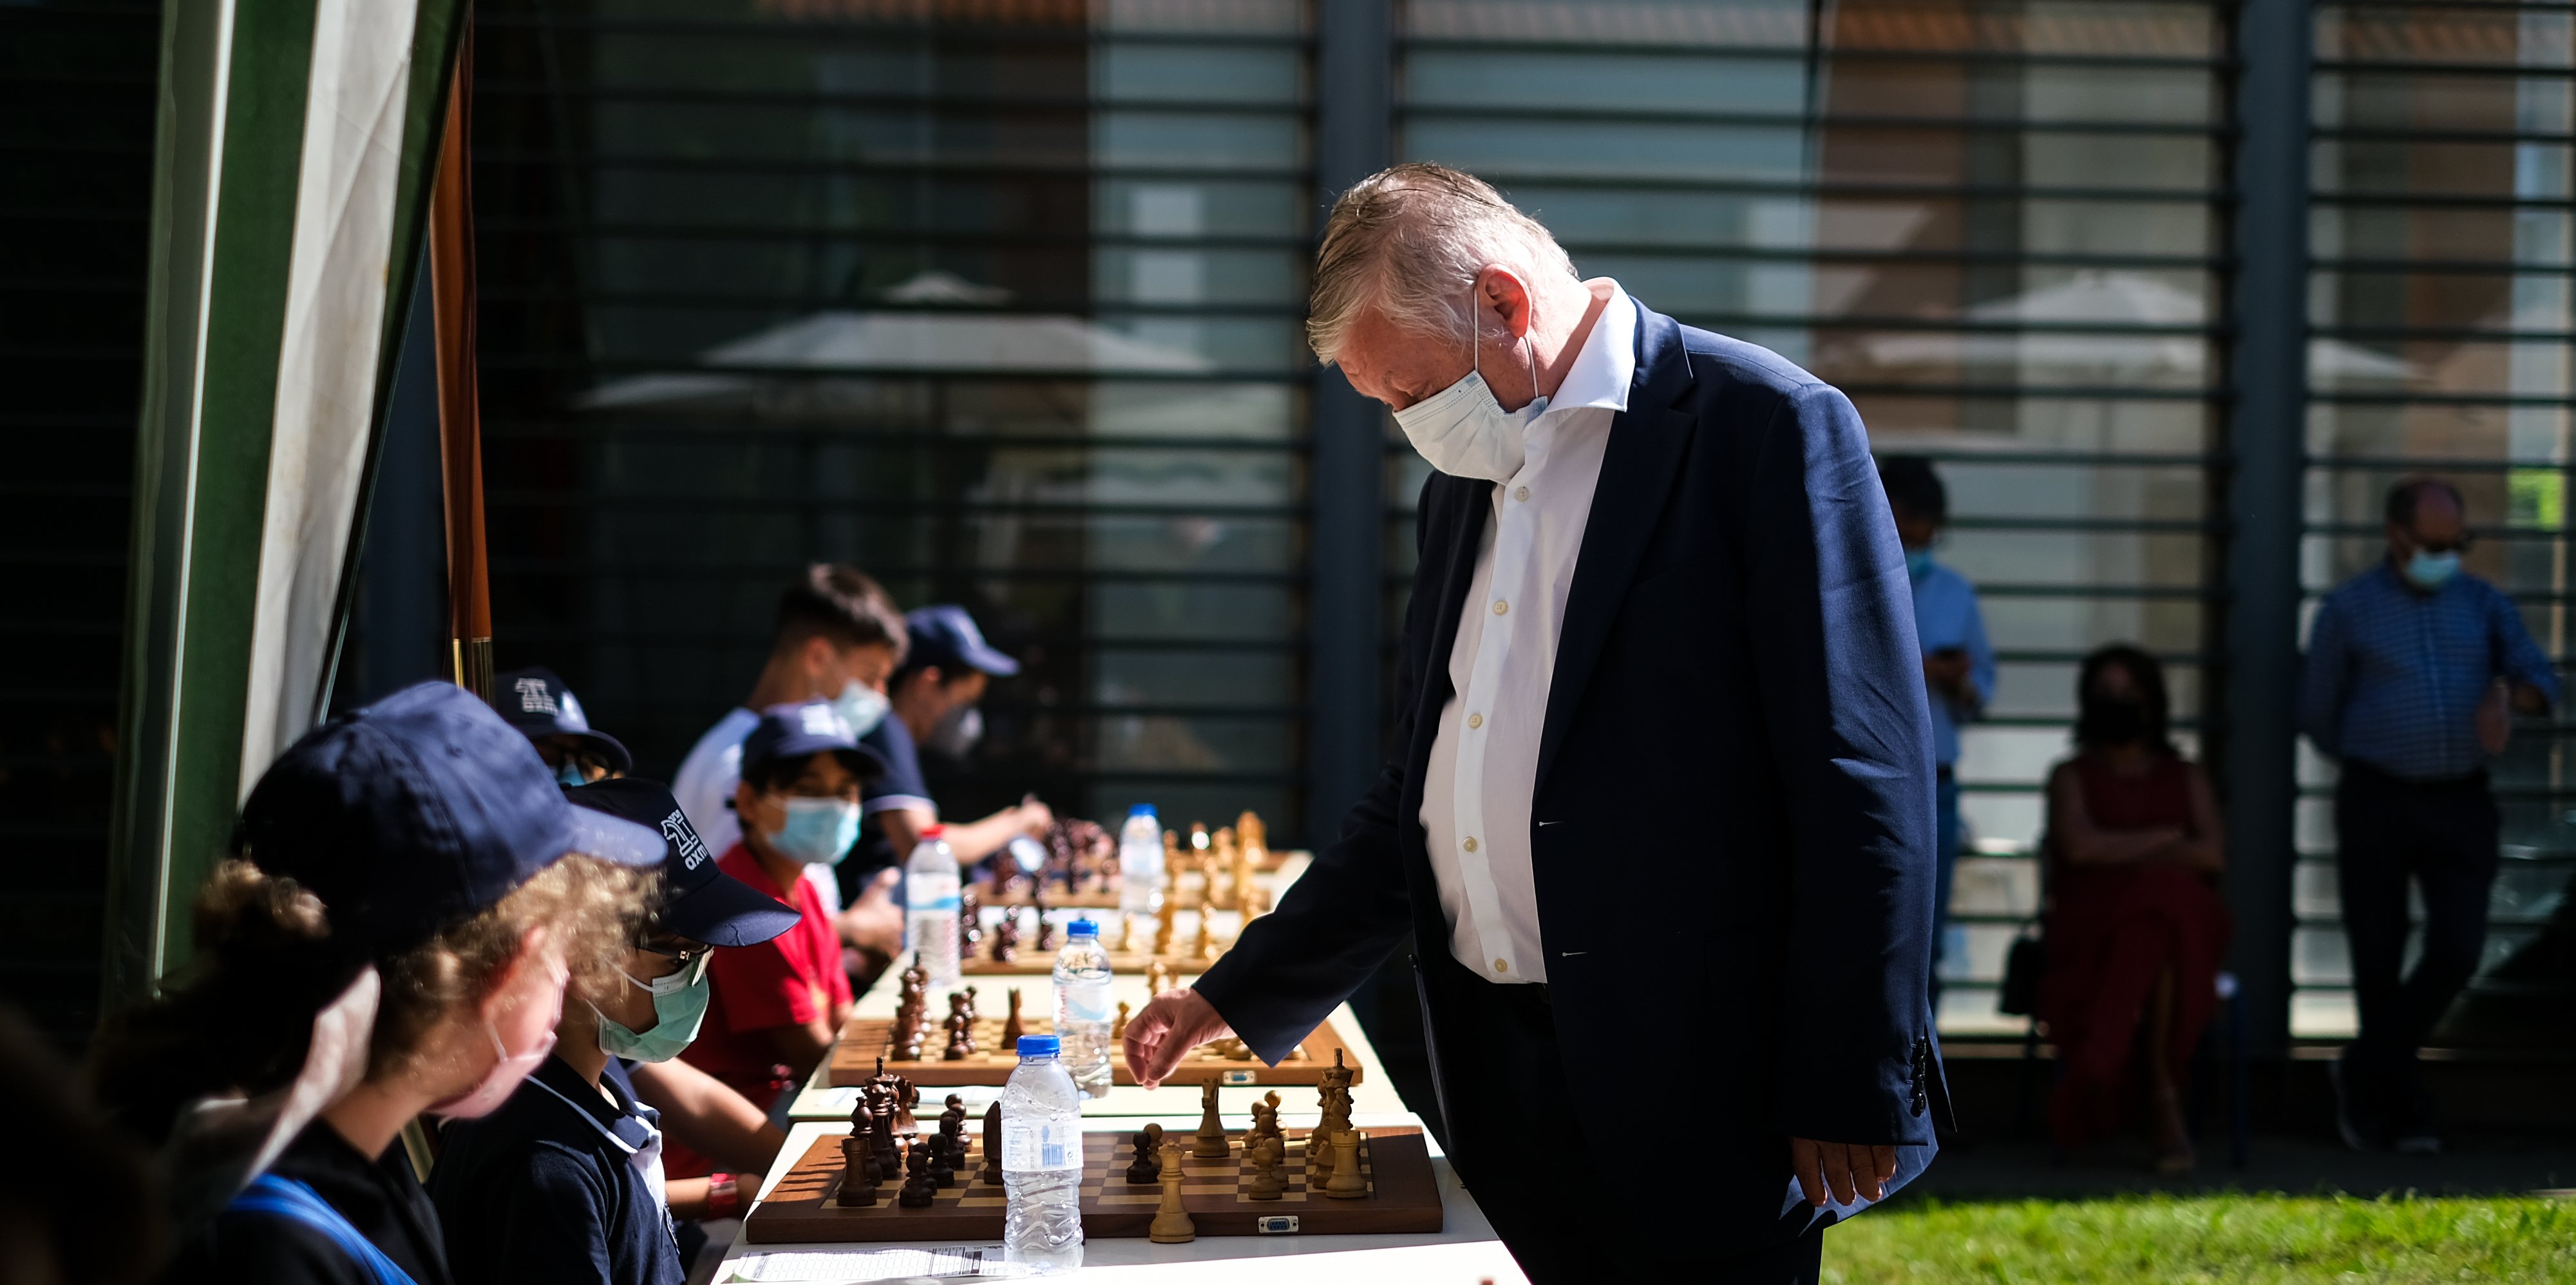 O primeiro campeão brasileiro de xadrez era Nascido em Portugal! Co